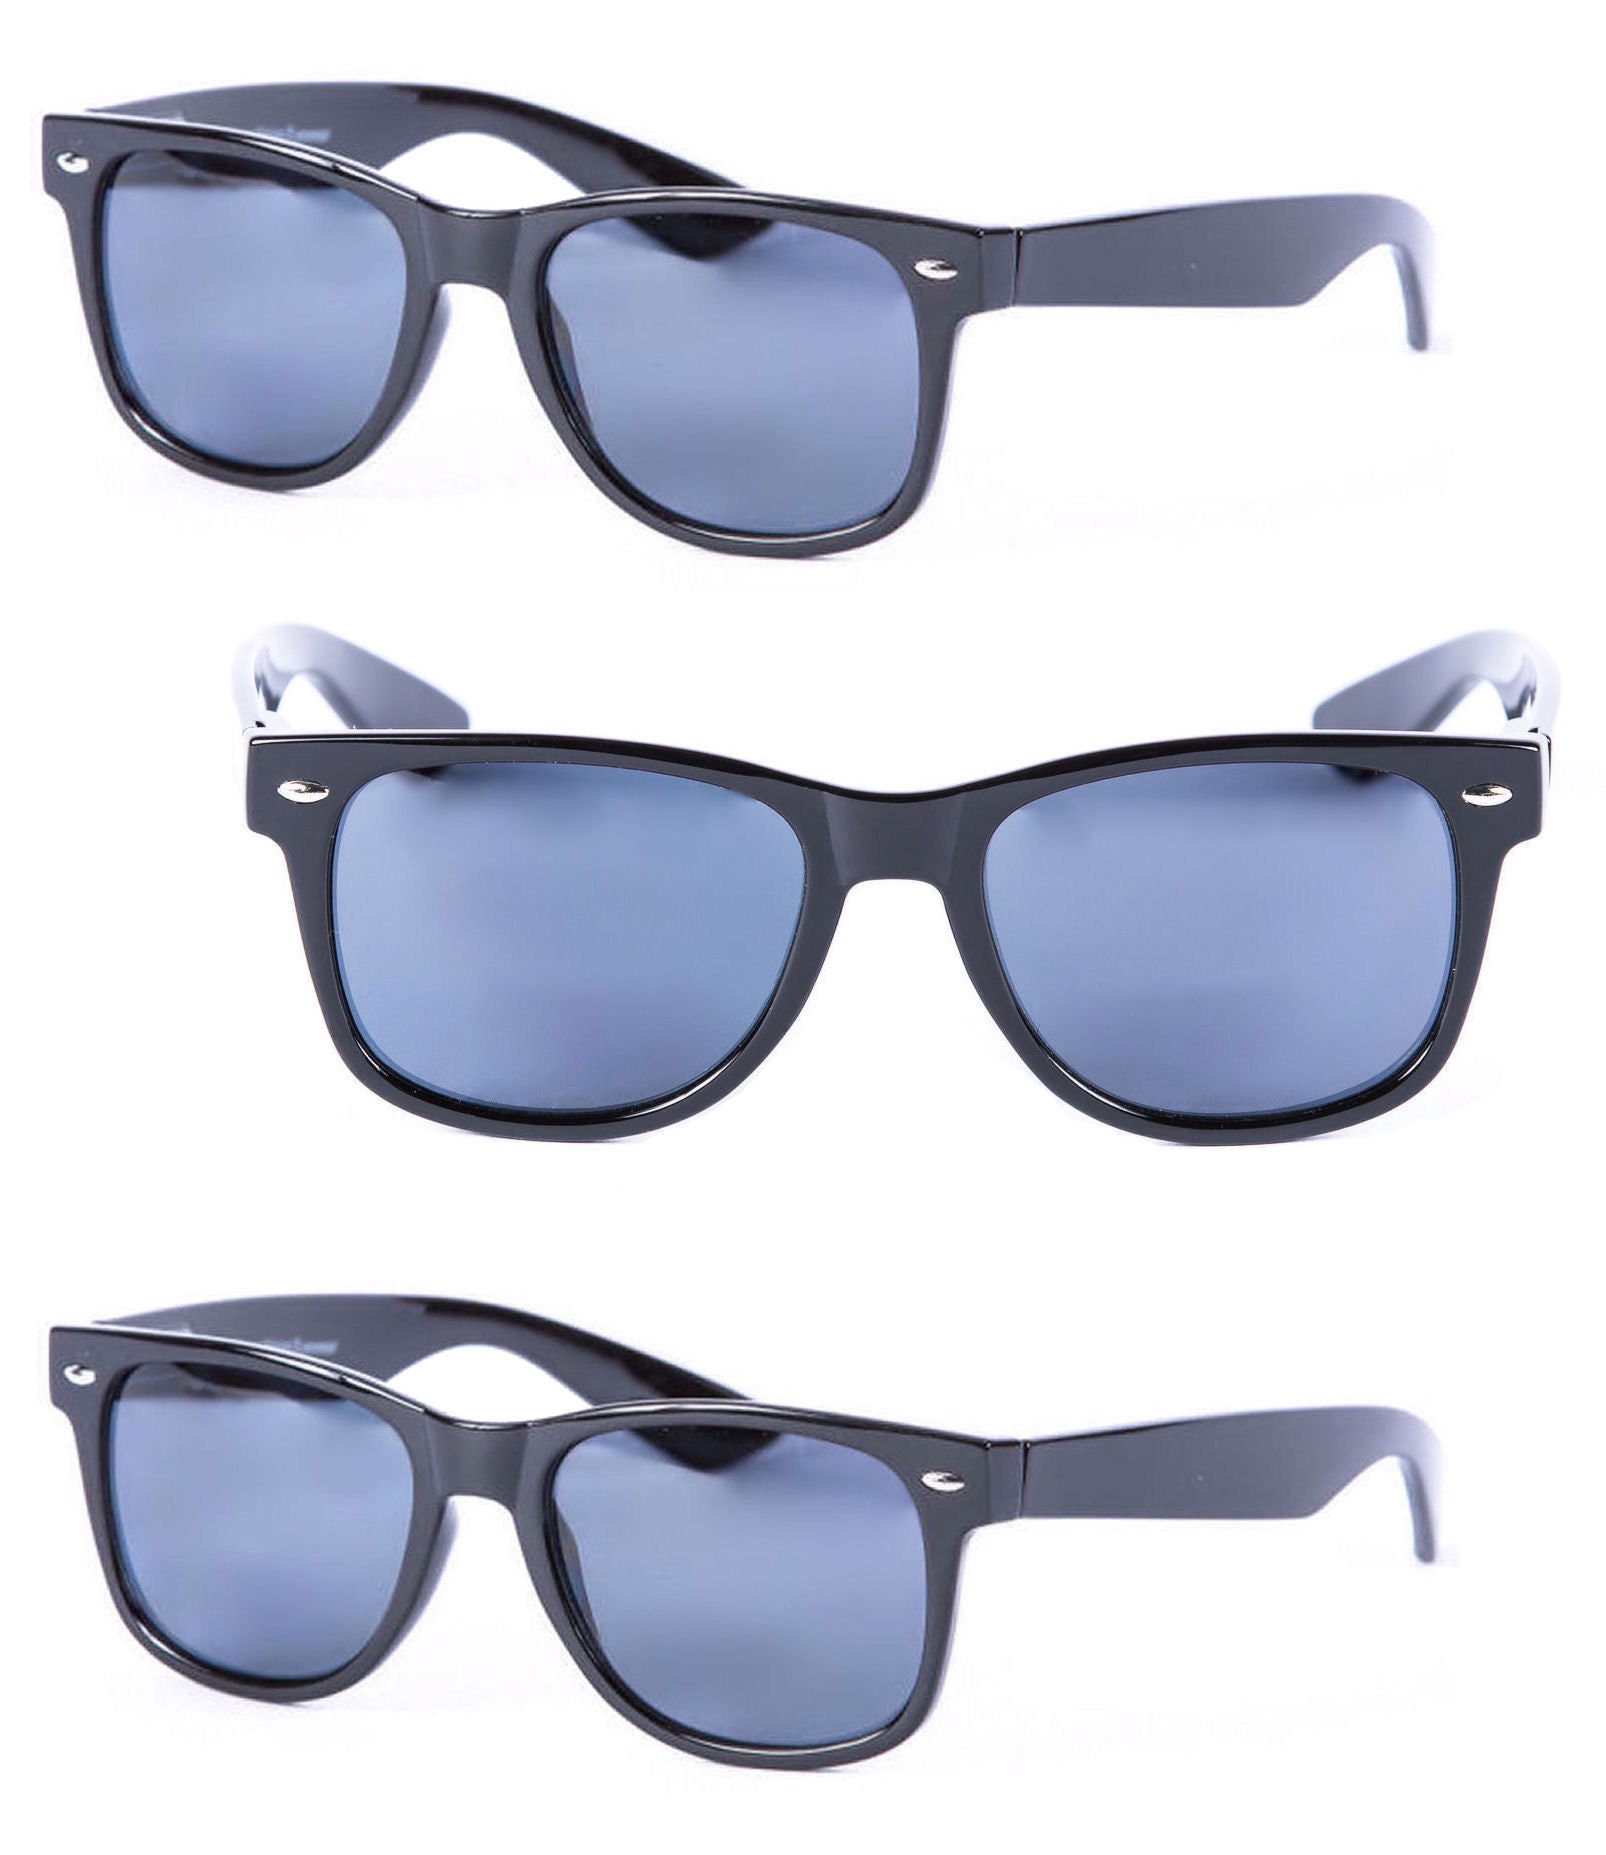 3 Pair of Full Lens Reading Sunglasses for Men and Women, Outdoor Sun ...